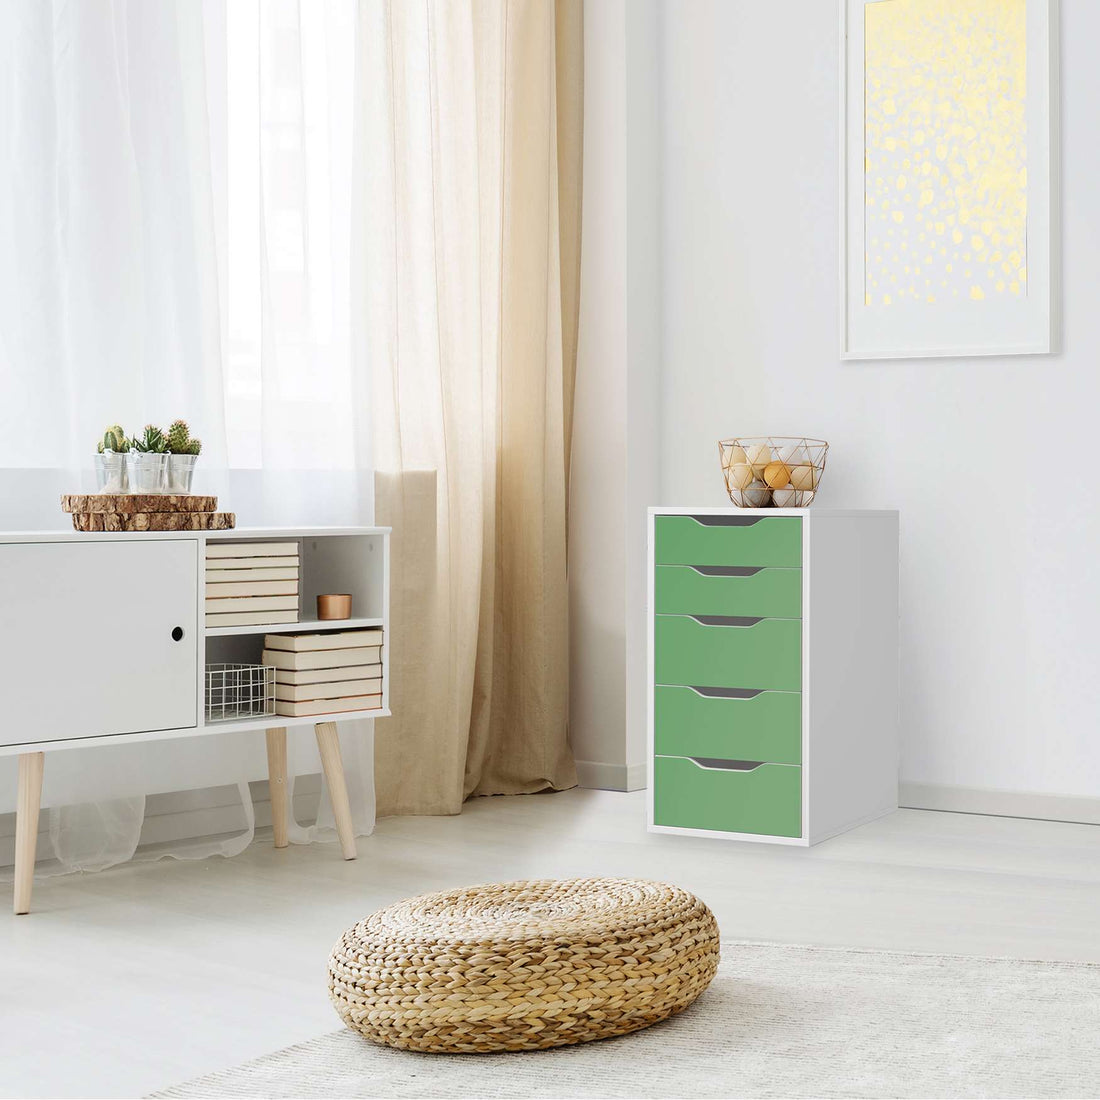 Klebefolie für Möbel Grün Light - IKEA Alex 5 Schubladen - Wohnzimmer